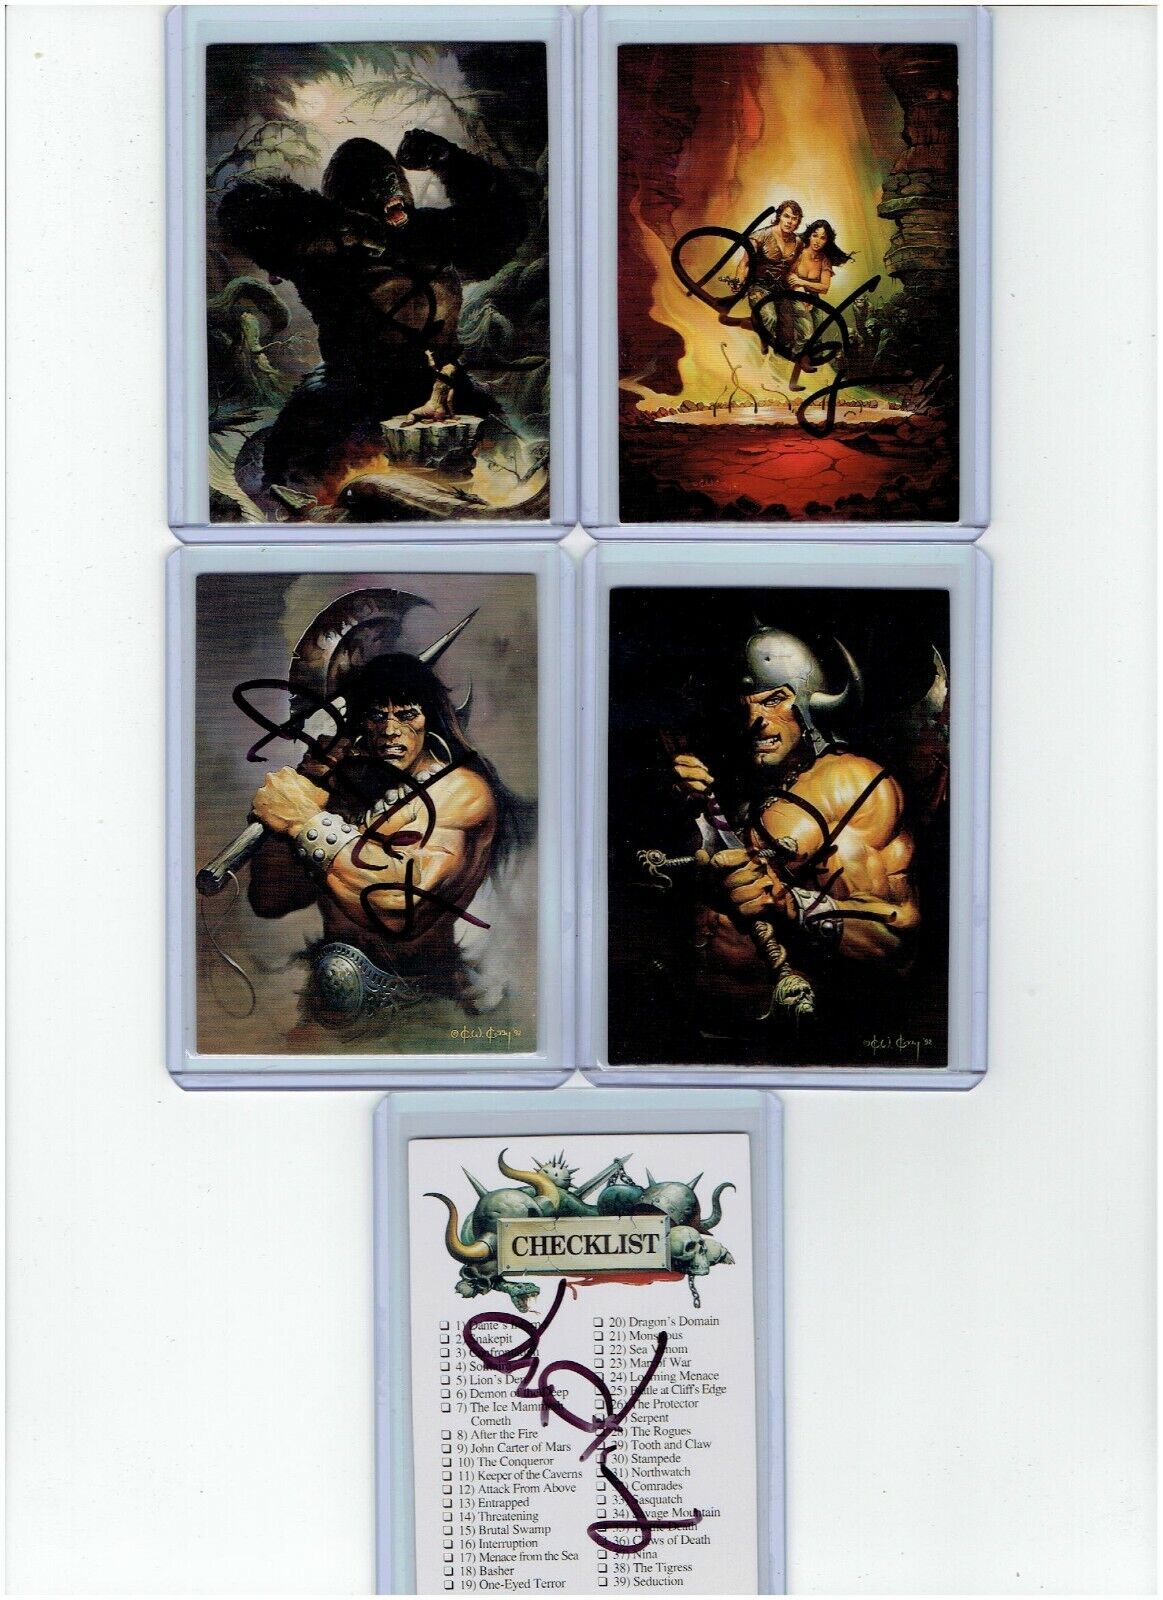 Ken Kelly Signed Series 1 Fantasy Art Trading Cards #86 - #90 1992 FPG